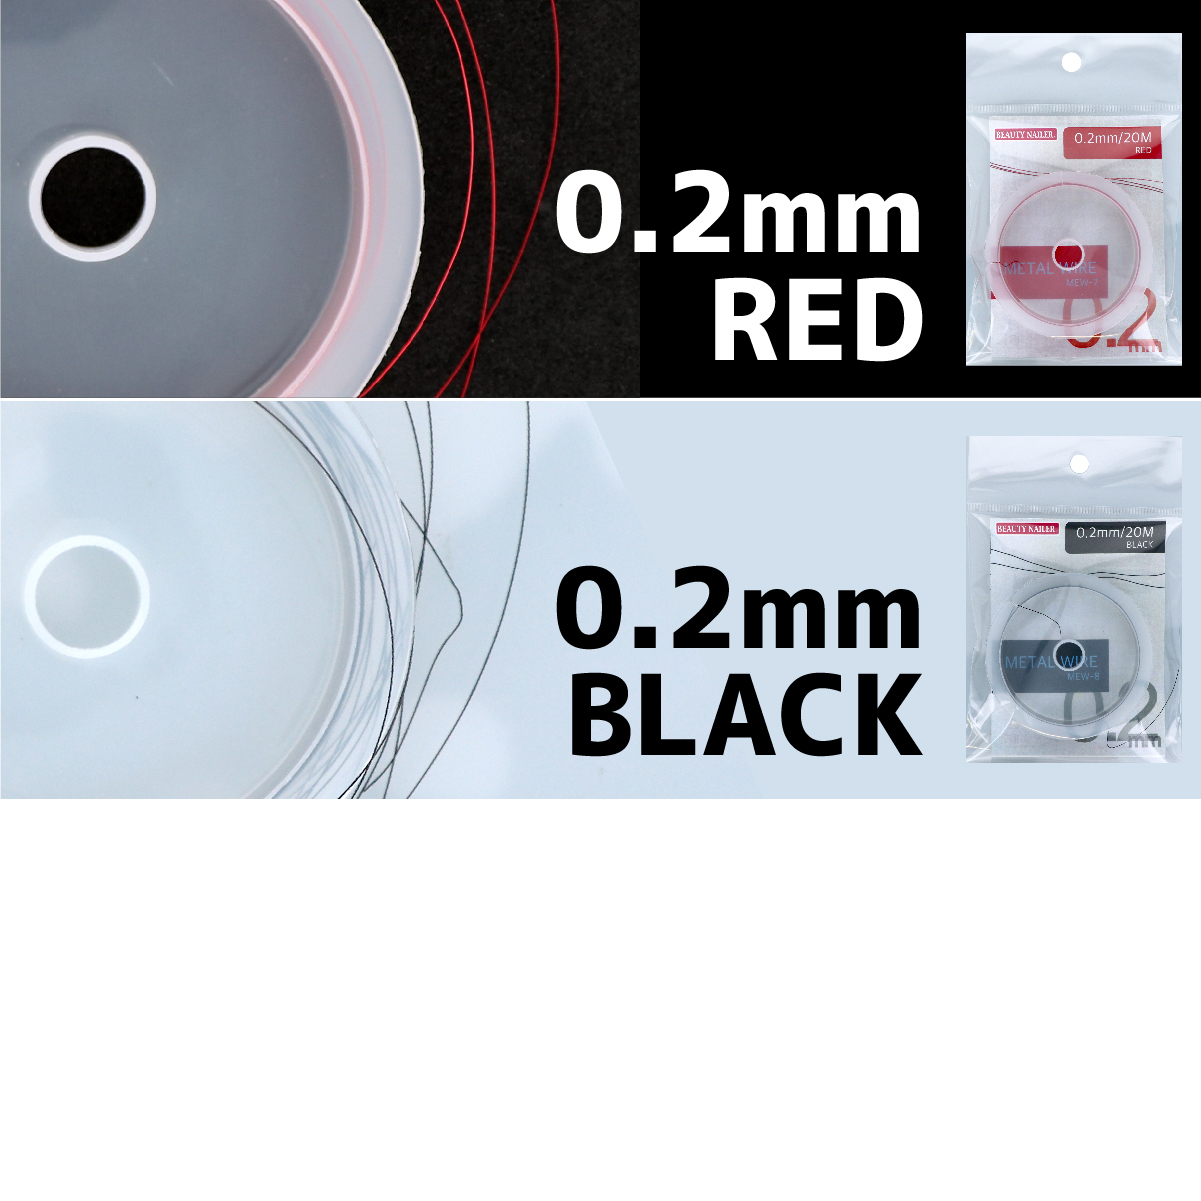 メタルワイヤー ブラック 0.2mm 20M (MEW-8)画像